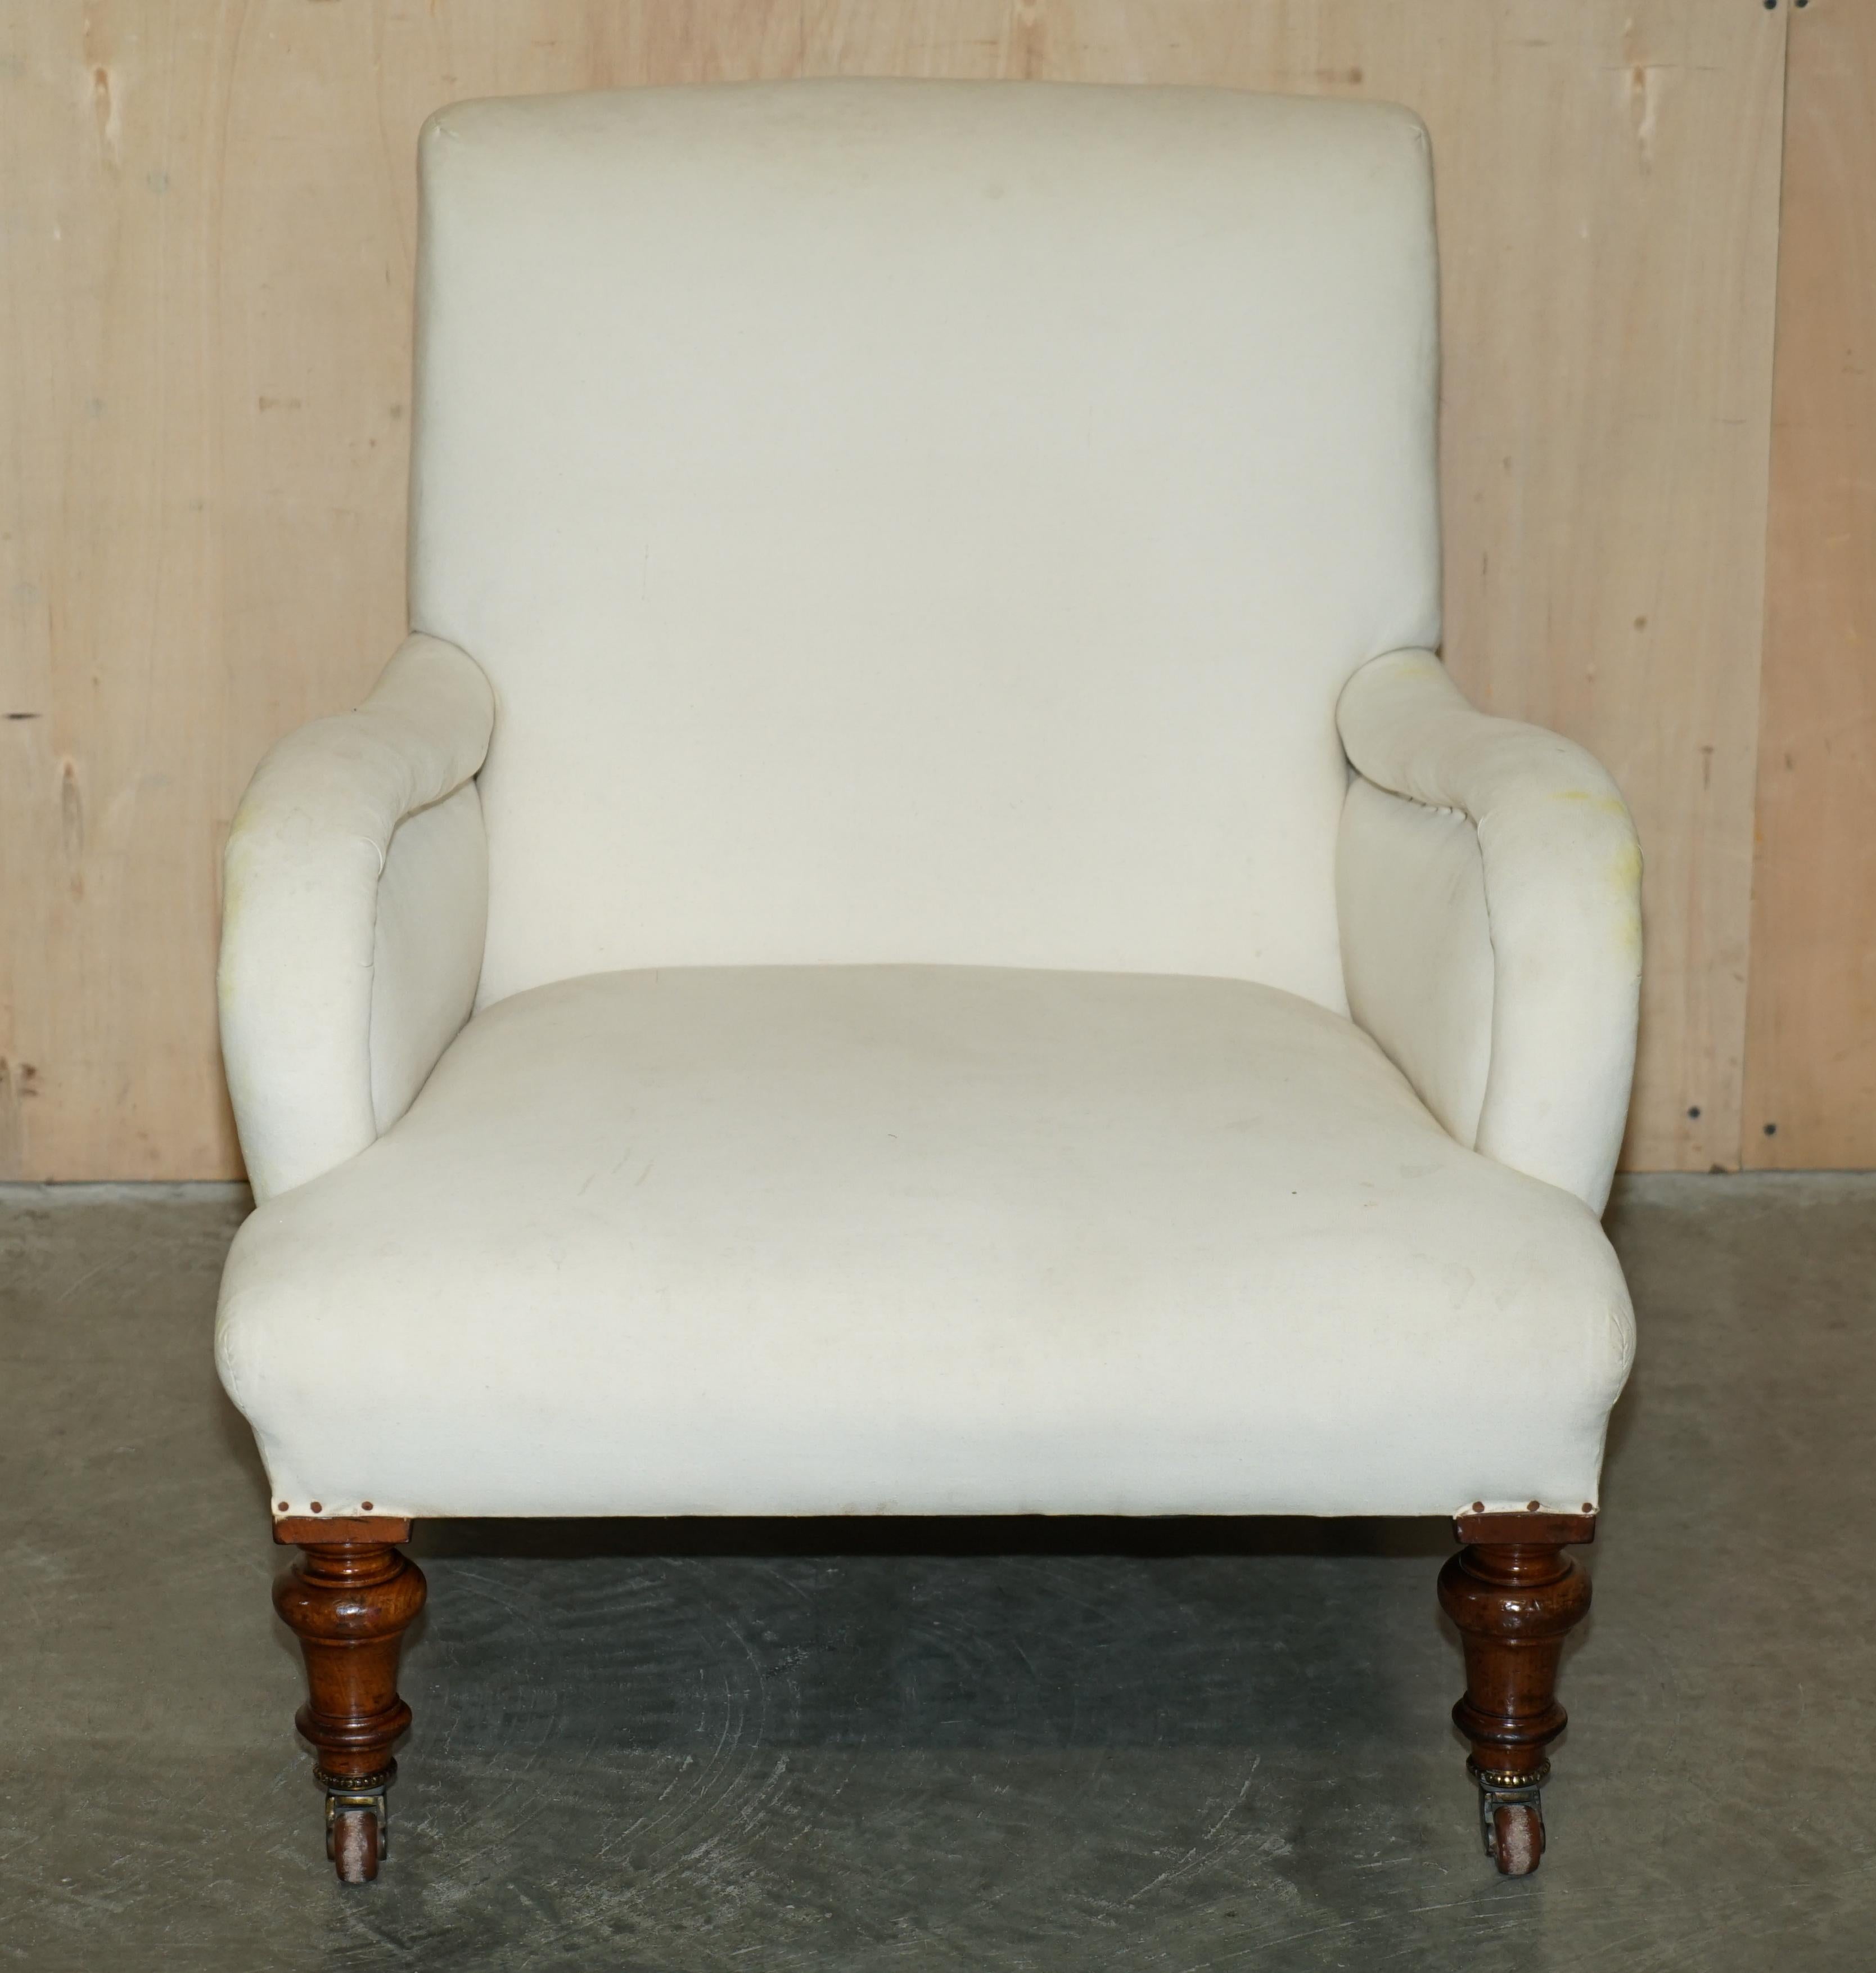 Royal House Antiques

Royal House Antiques freut sich, diesen schönen originalen viktorianischen Sessel mit zeitgenössischen Porzellanrollen und Kattun-Polsterung im Stil des Modells Bridgewater von Howard & Son zum Verkauf anzubieten. 

Bitte